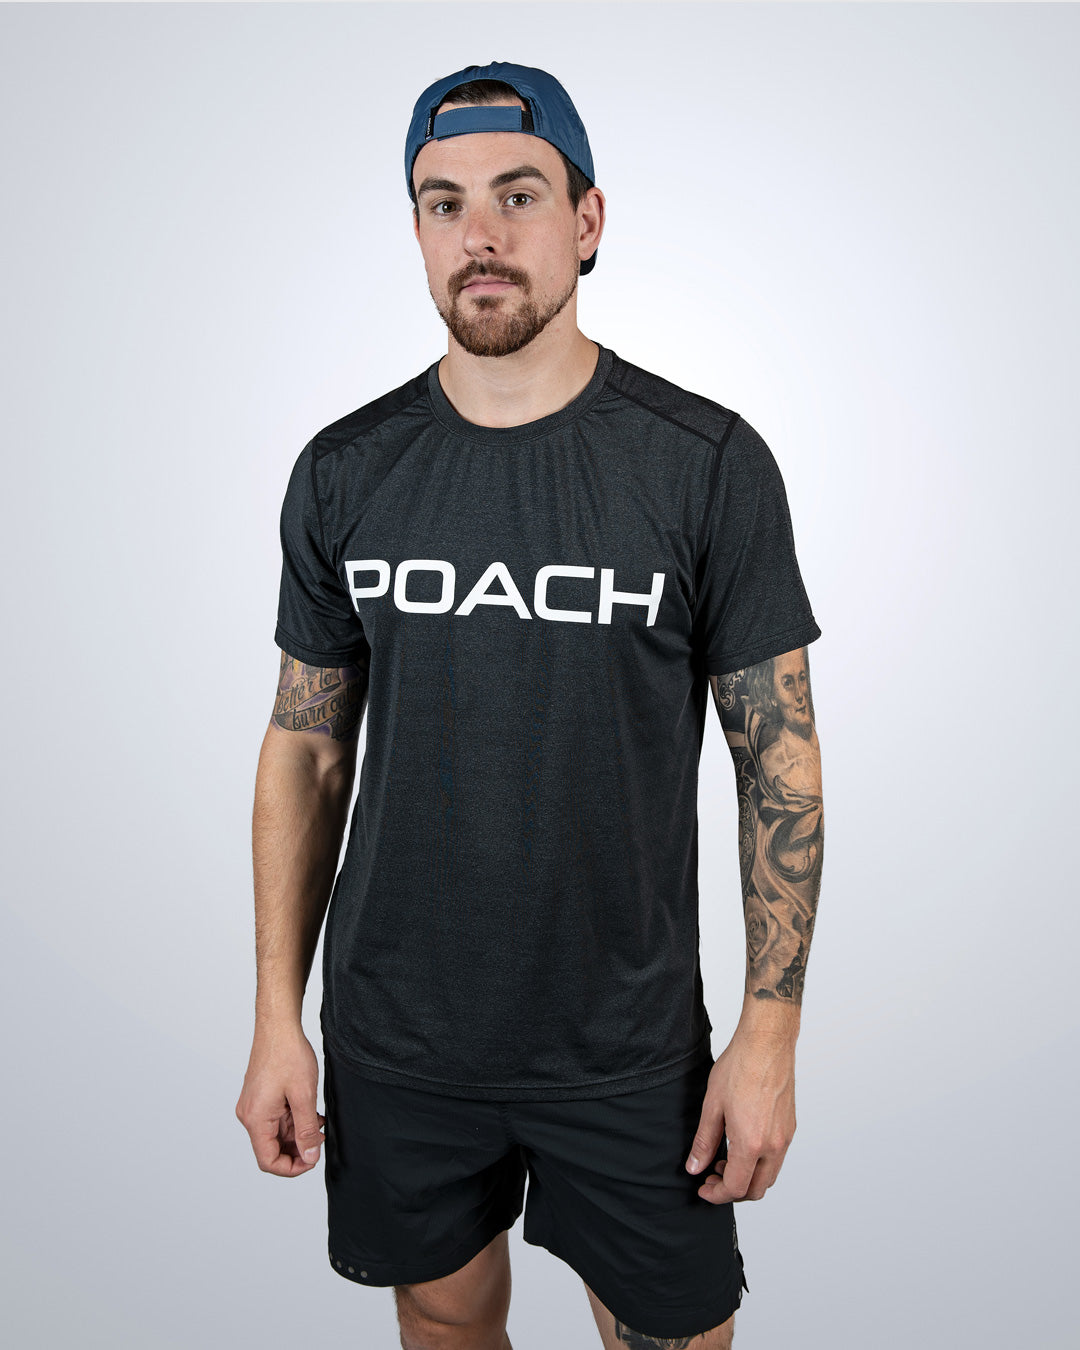 Poach Dri-fit Performance Shirt - "POACH"